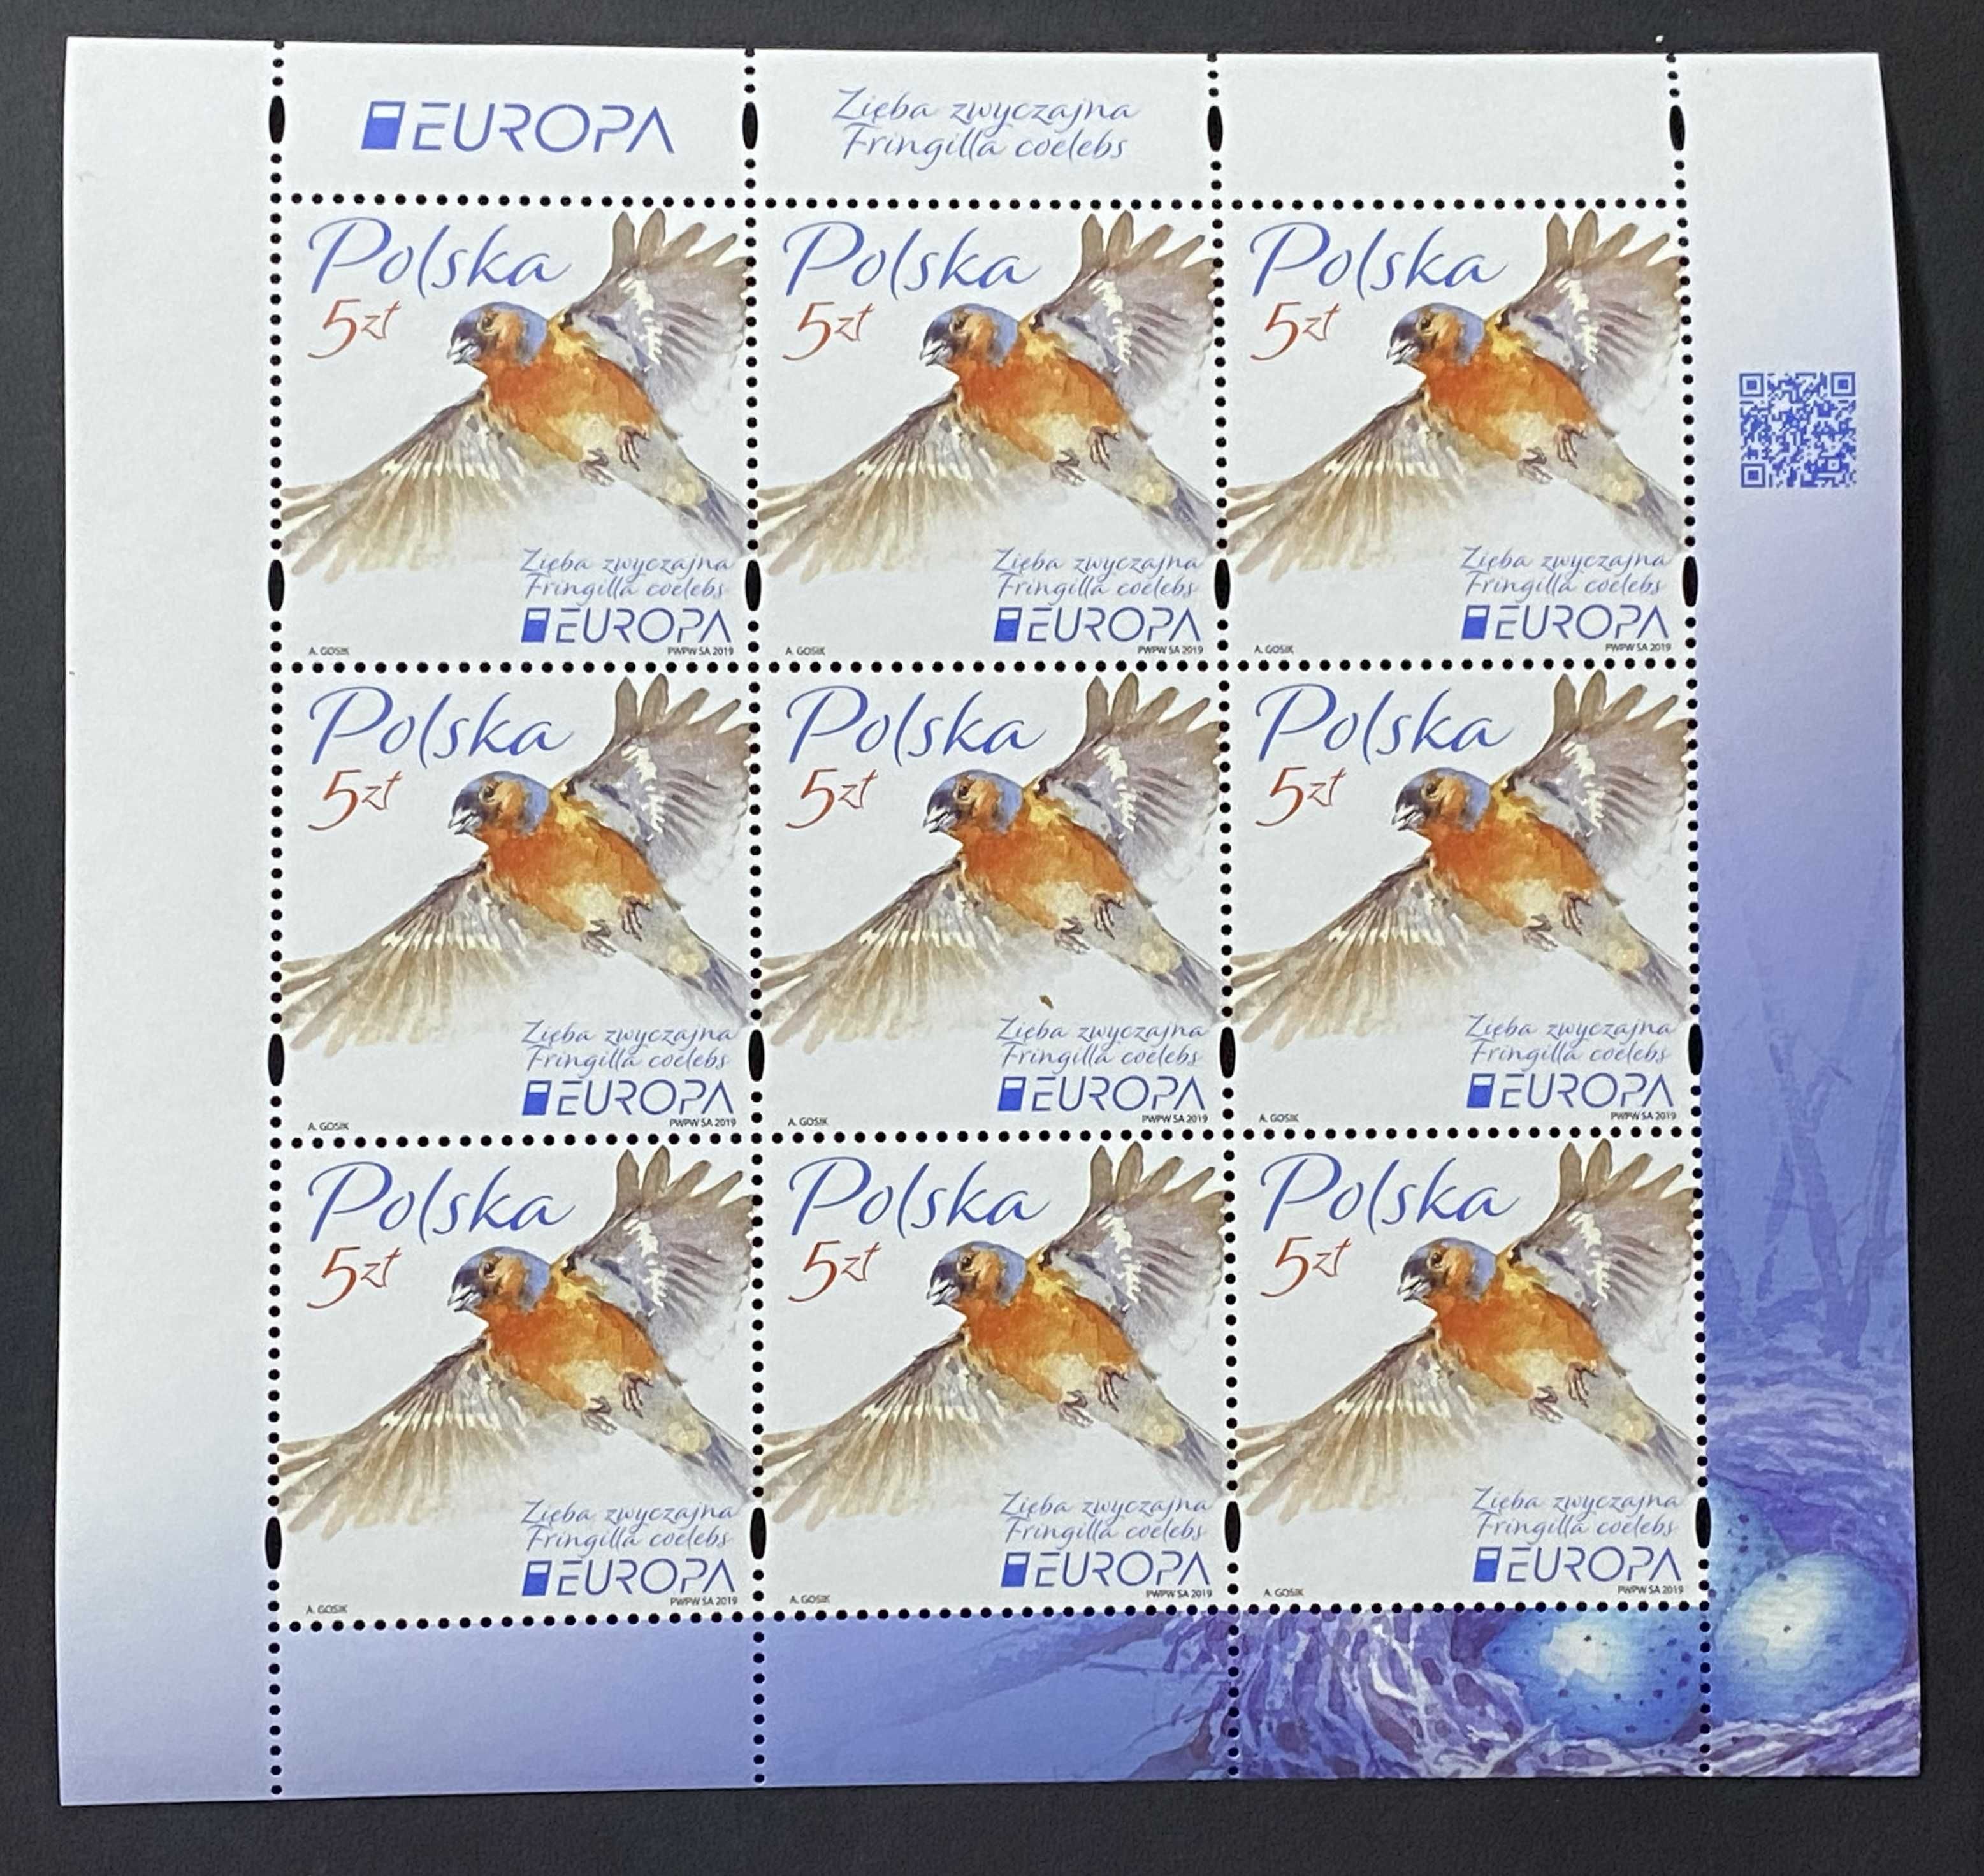 Znaczki Polska Arkusz Fi 4954 9 znaczków EUROPA 2019r